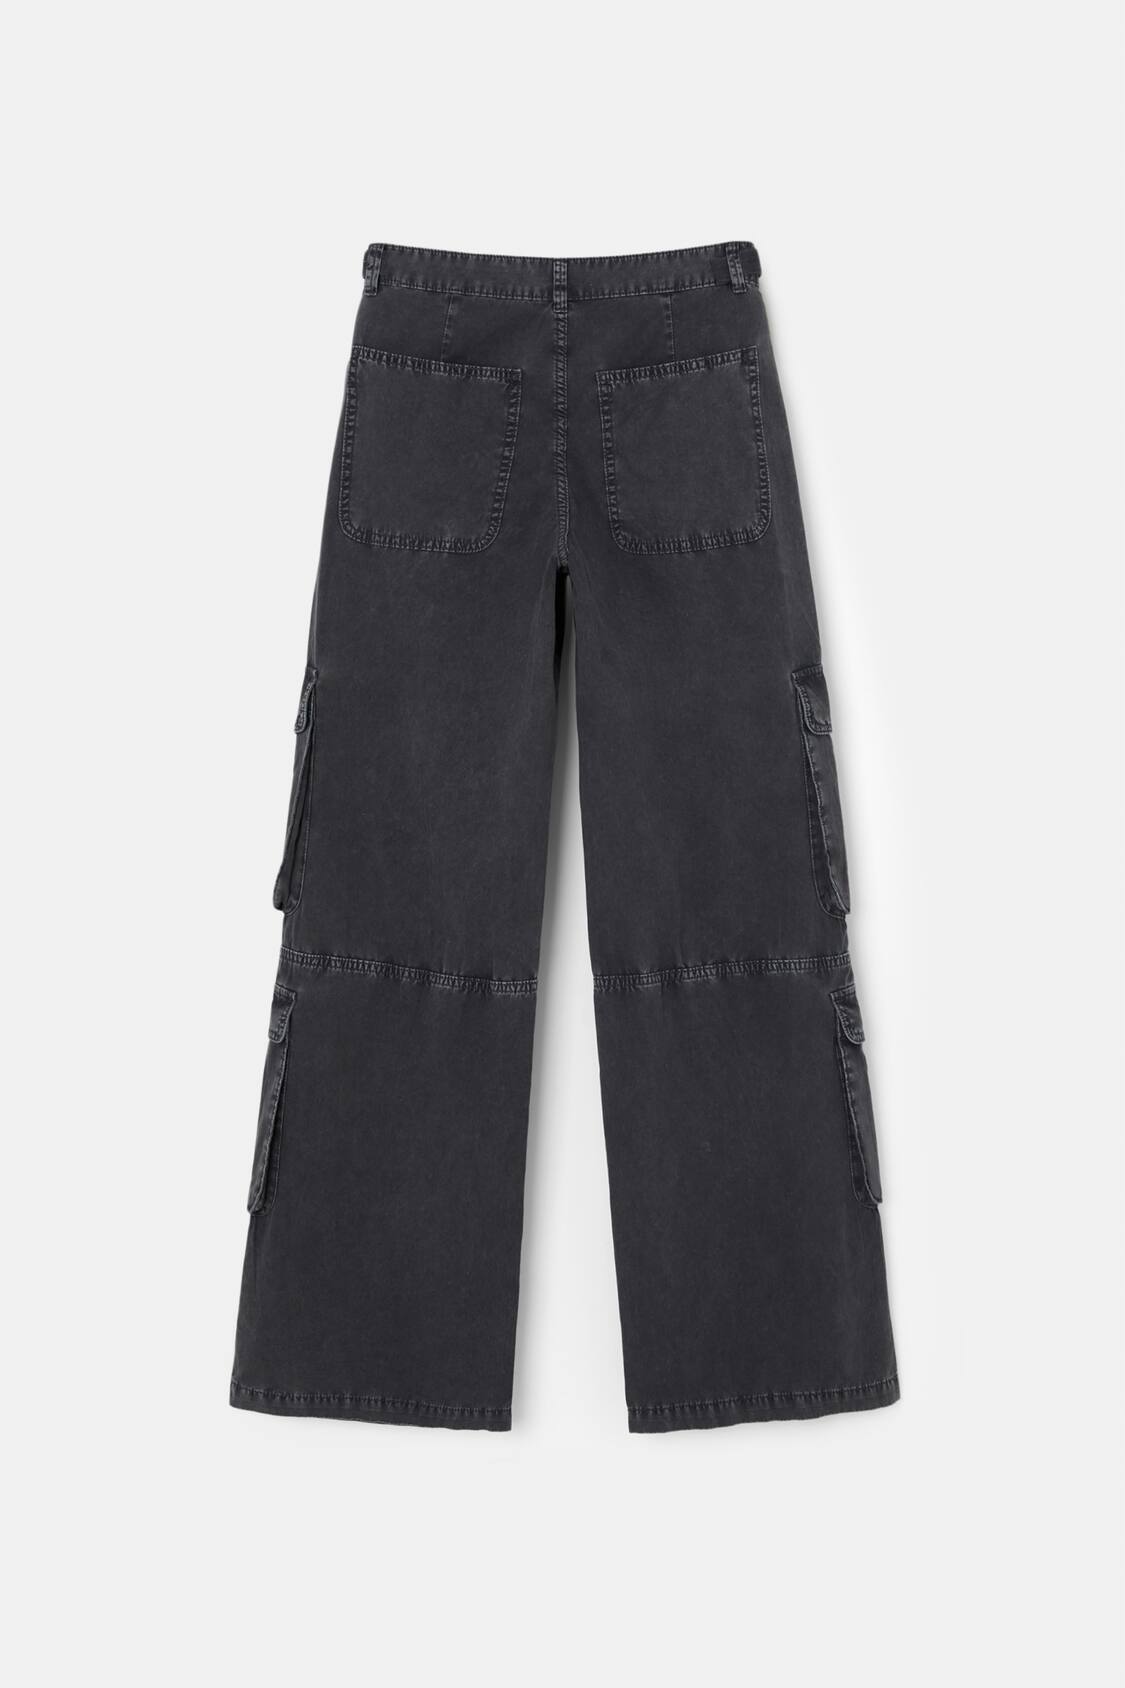  Jeans for Women- Zipper Fly Flap Pocket Cargo Jeans